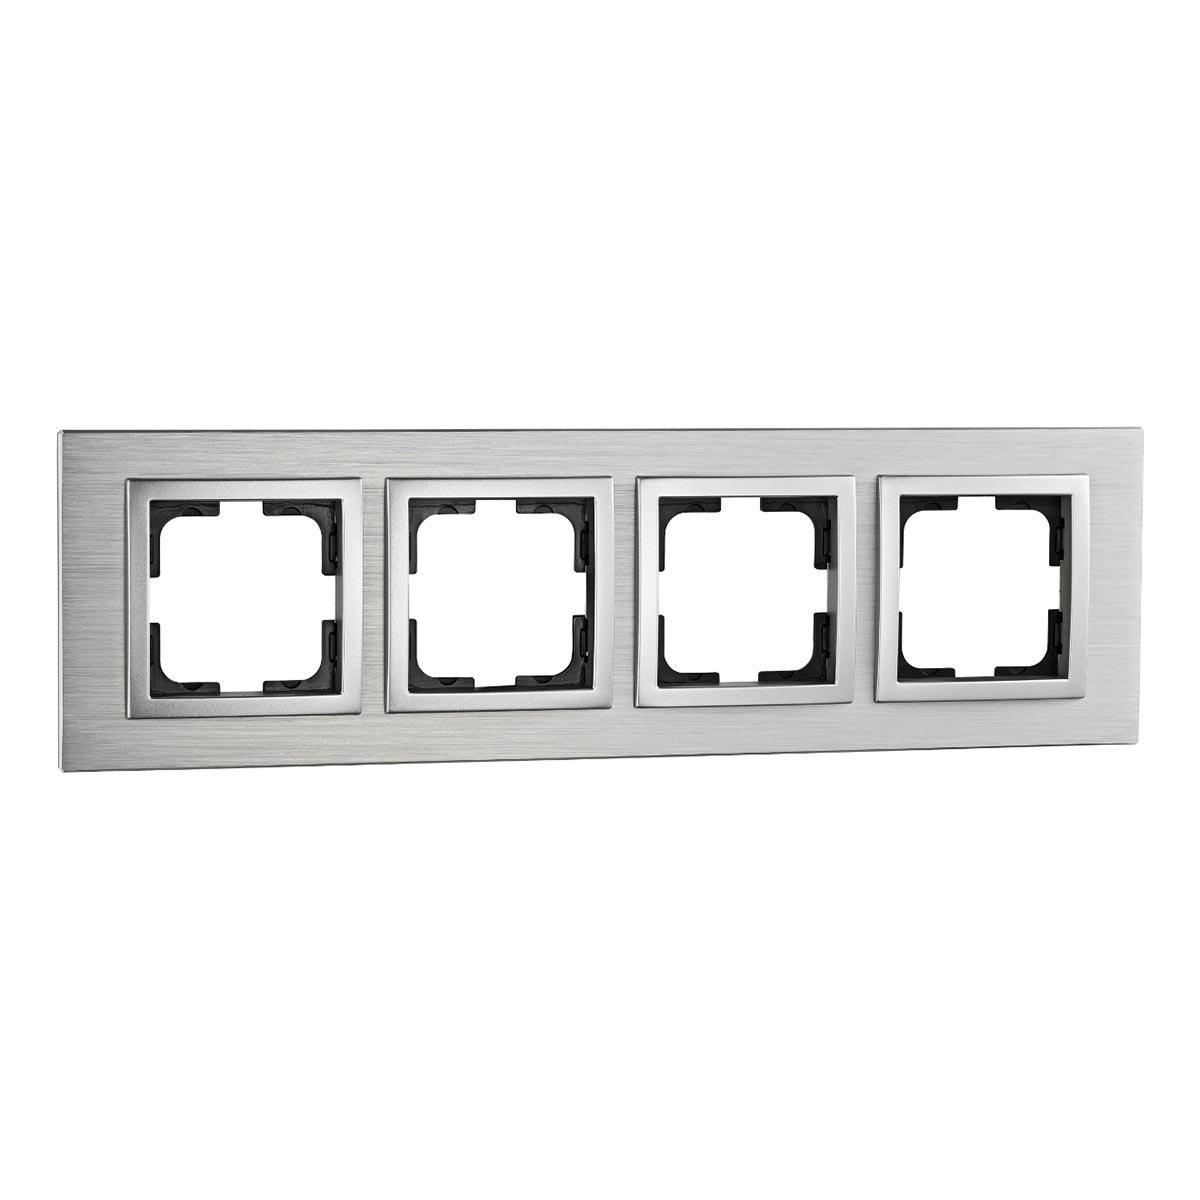 Рамка 4-постовая Mono Electric Style Aluminium серебро 107-800000-163